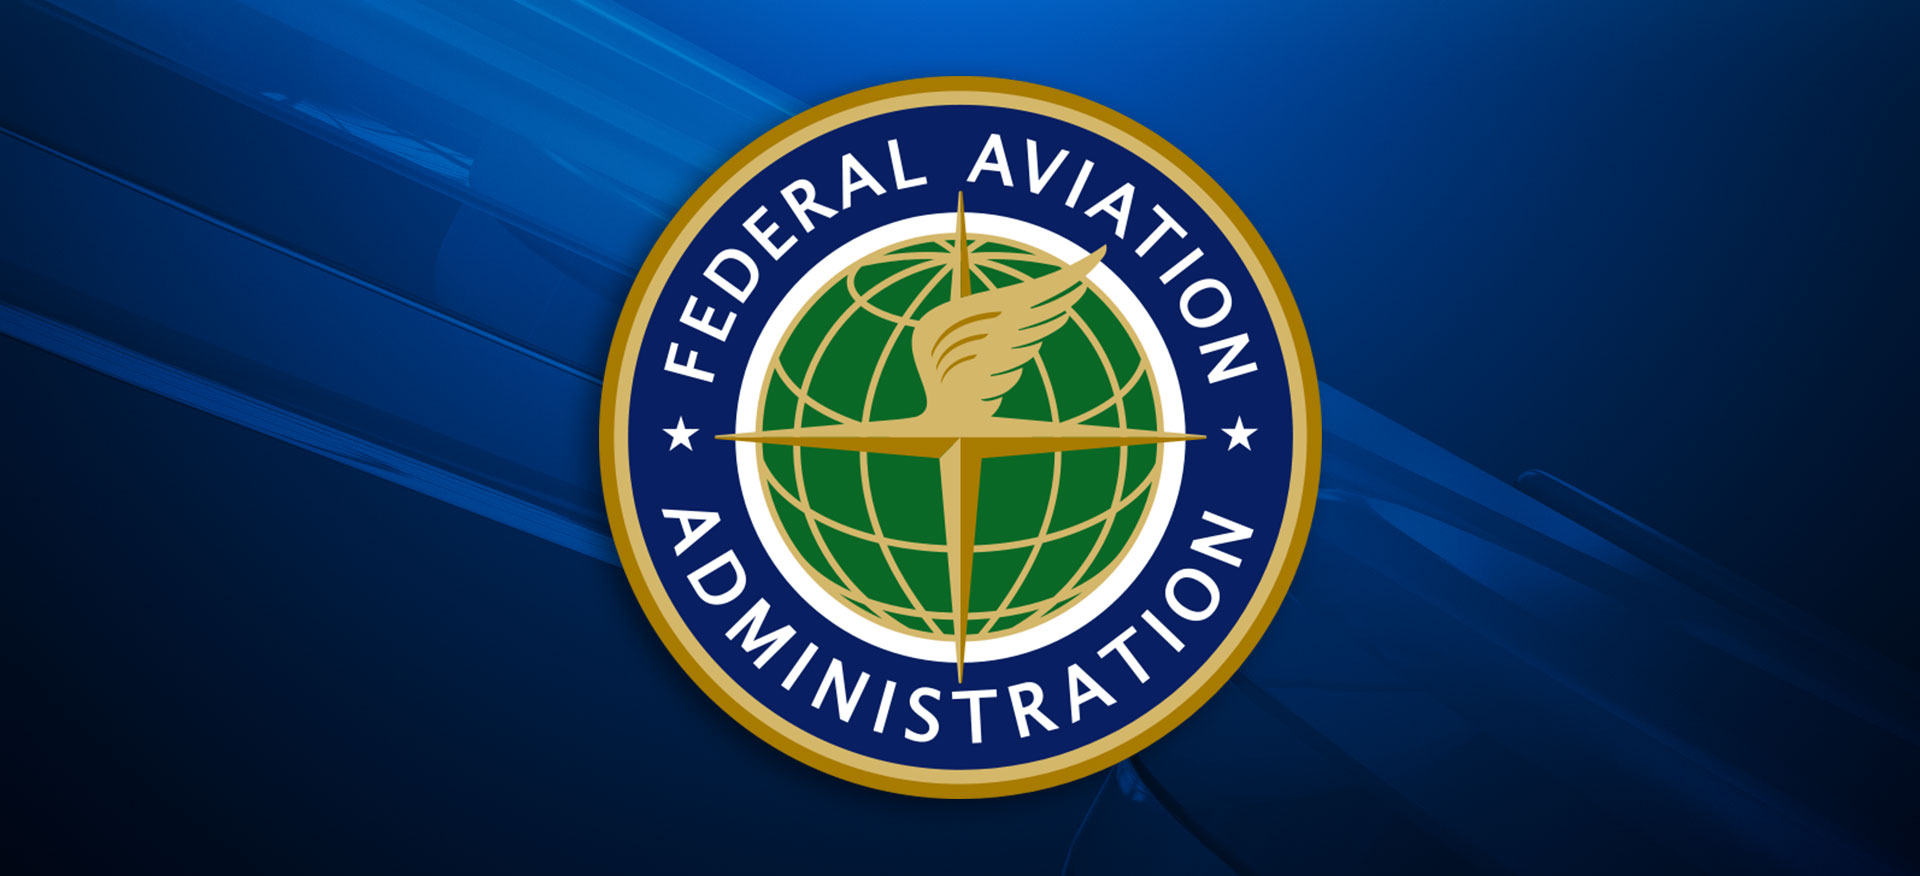 federal aviation exam